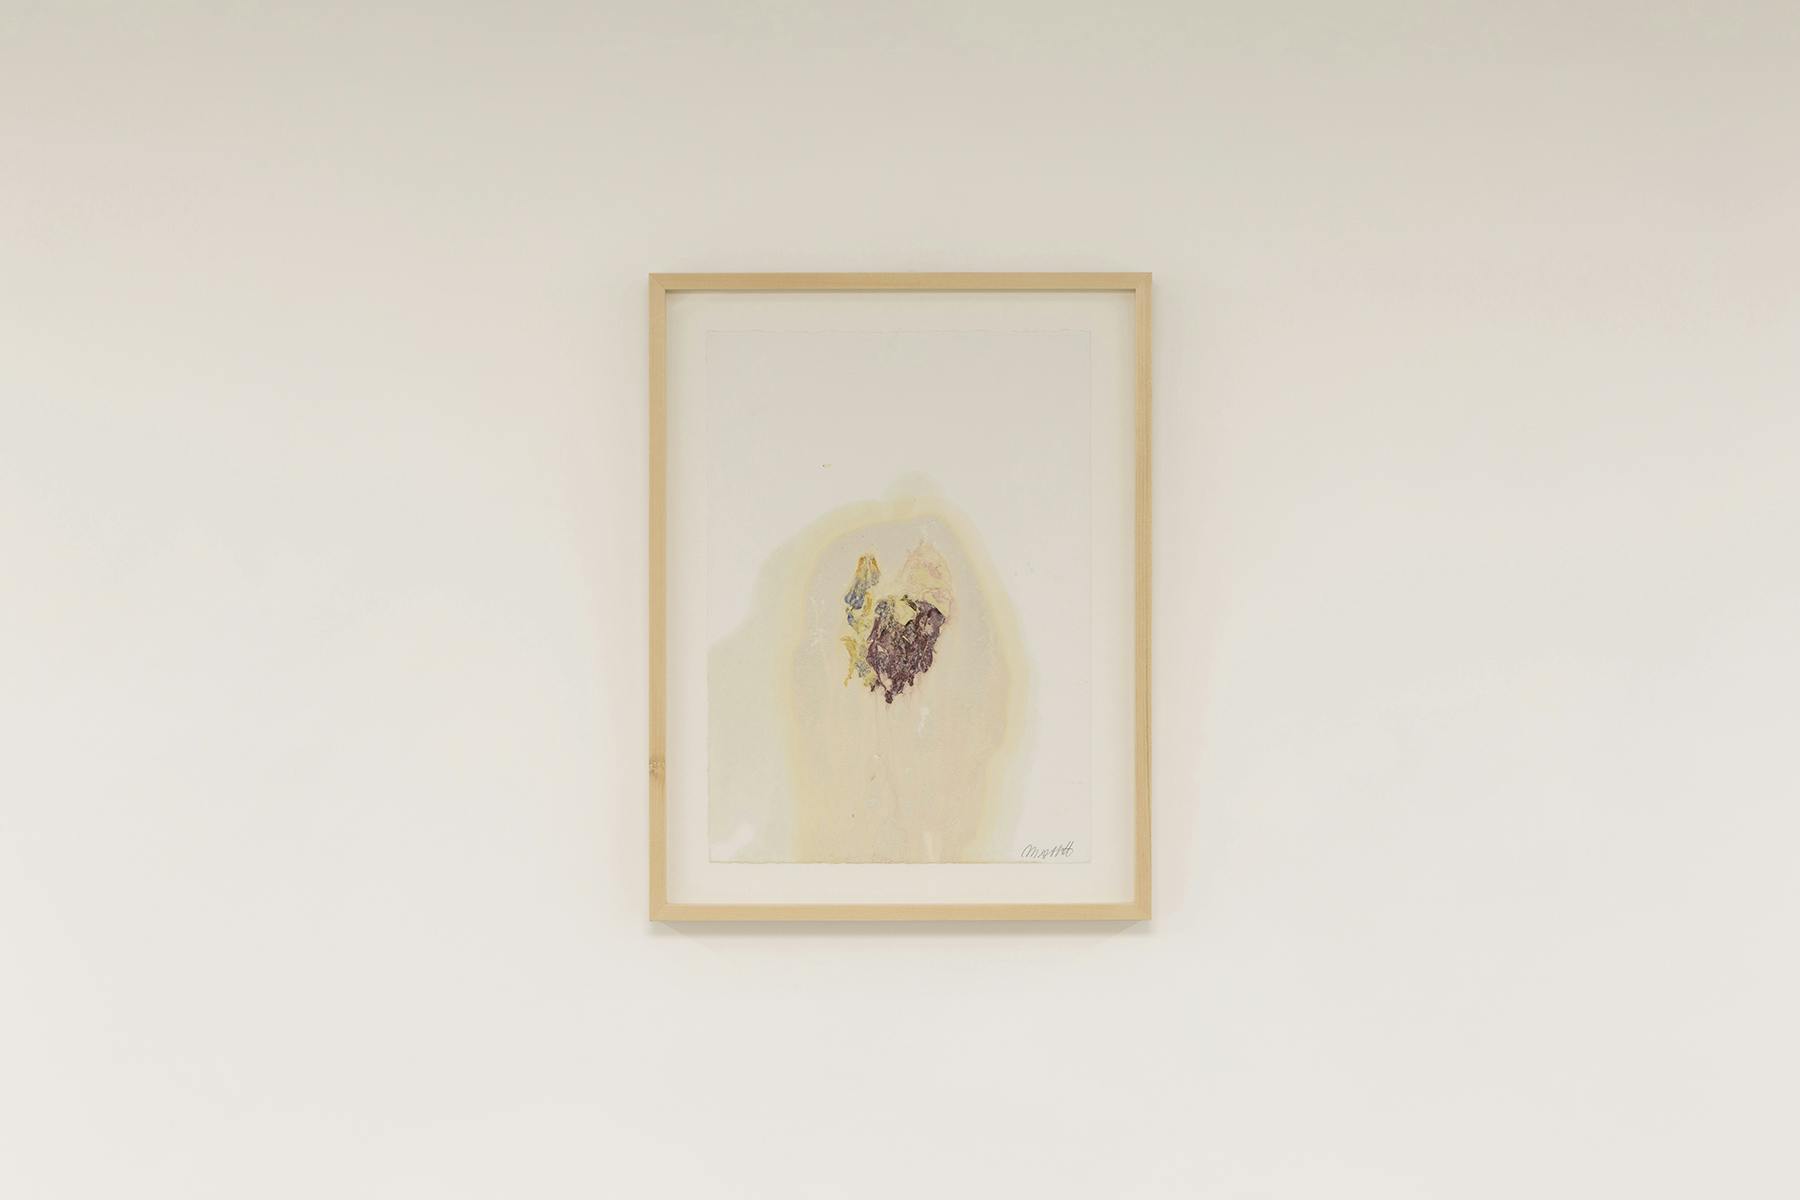 Marble and Flowers 2 (Flesh, Venus, A Heart), 2021, monostampa, fiori e polvere di marmo su carta, 48 x 37 cm